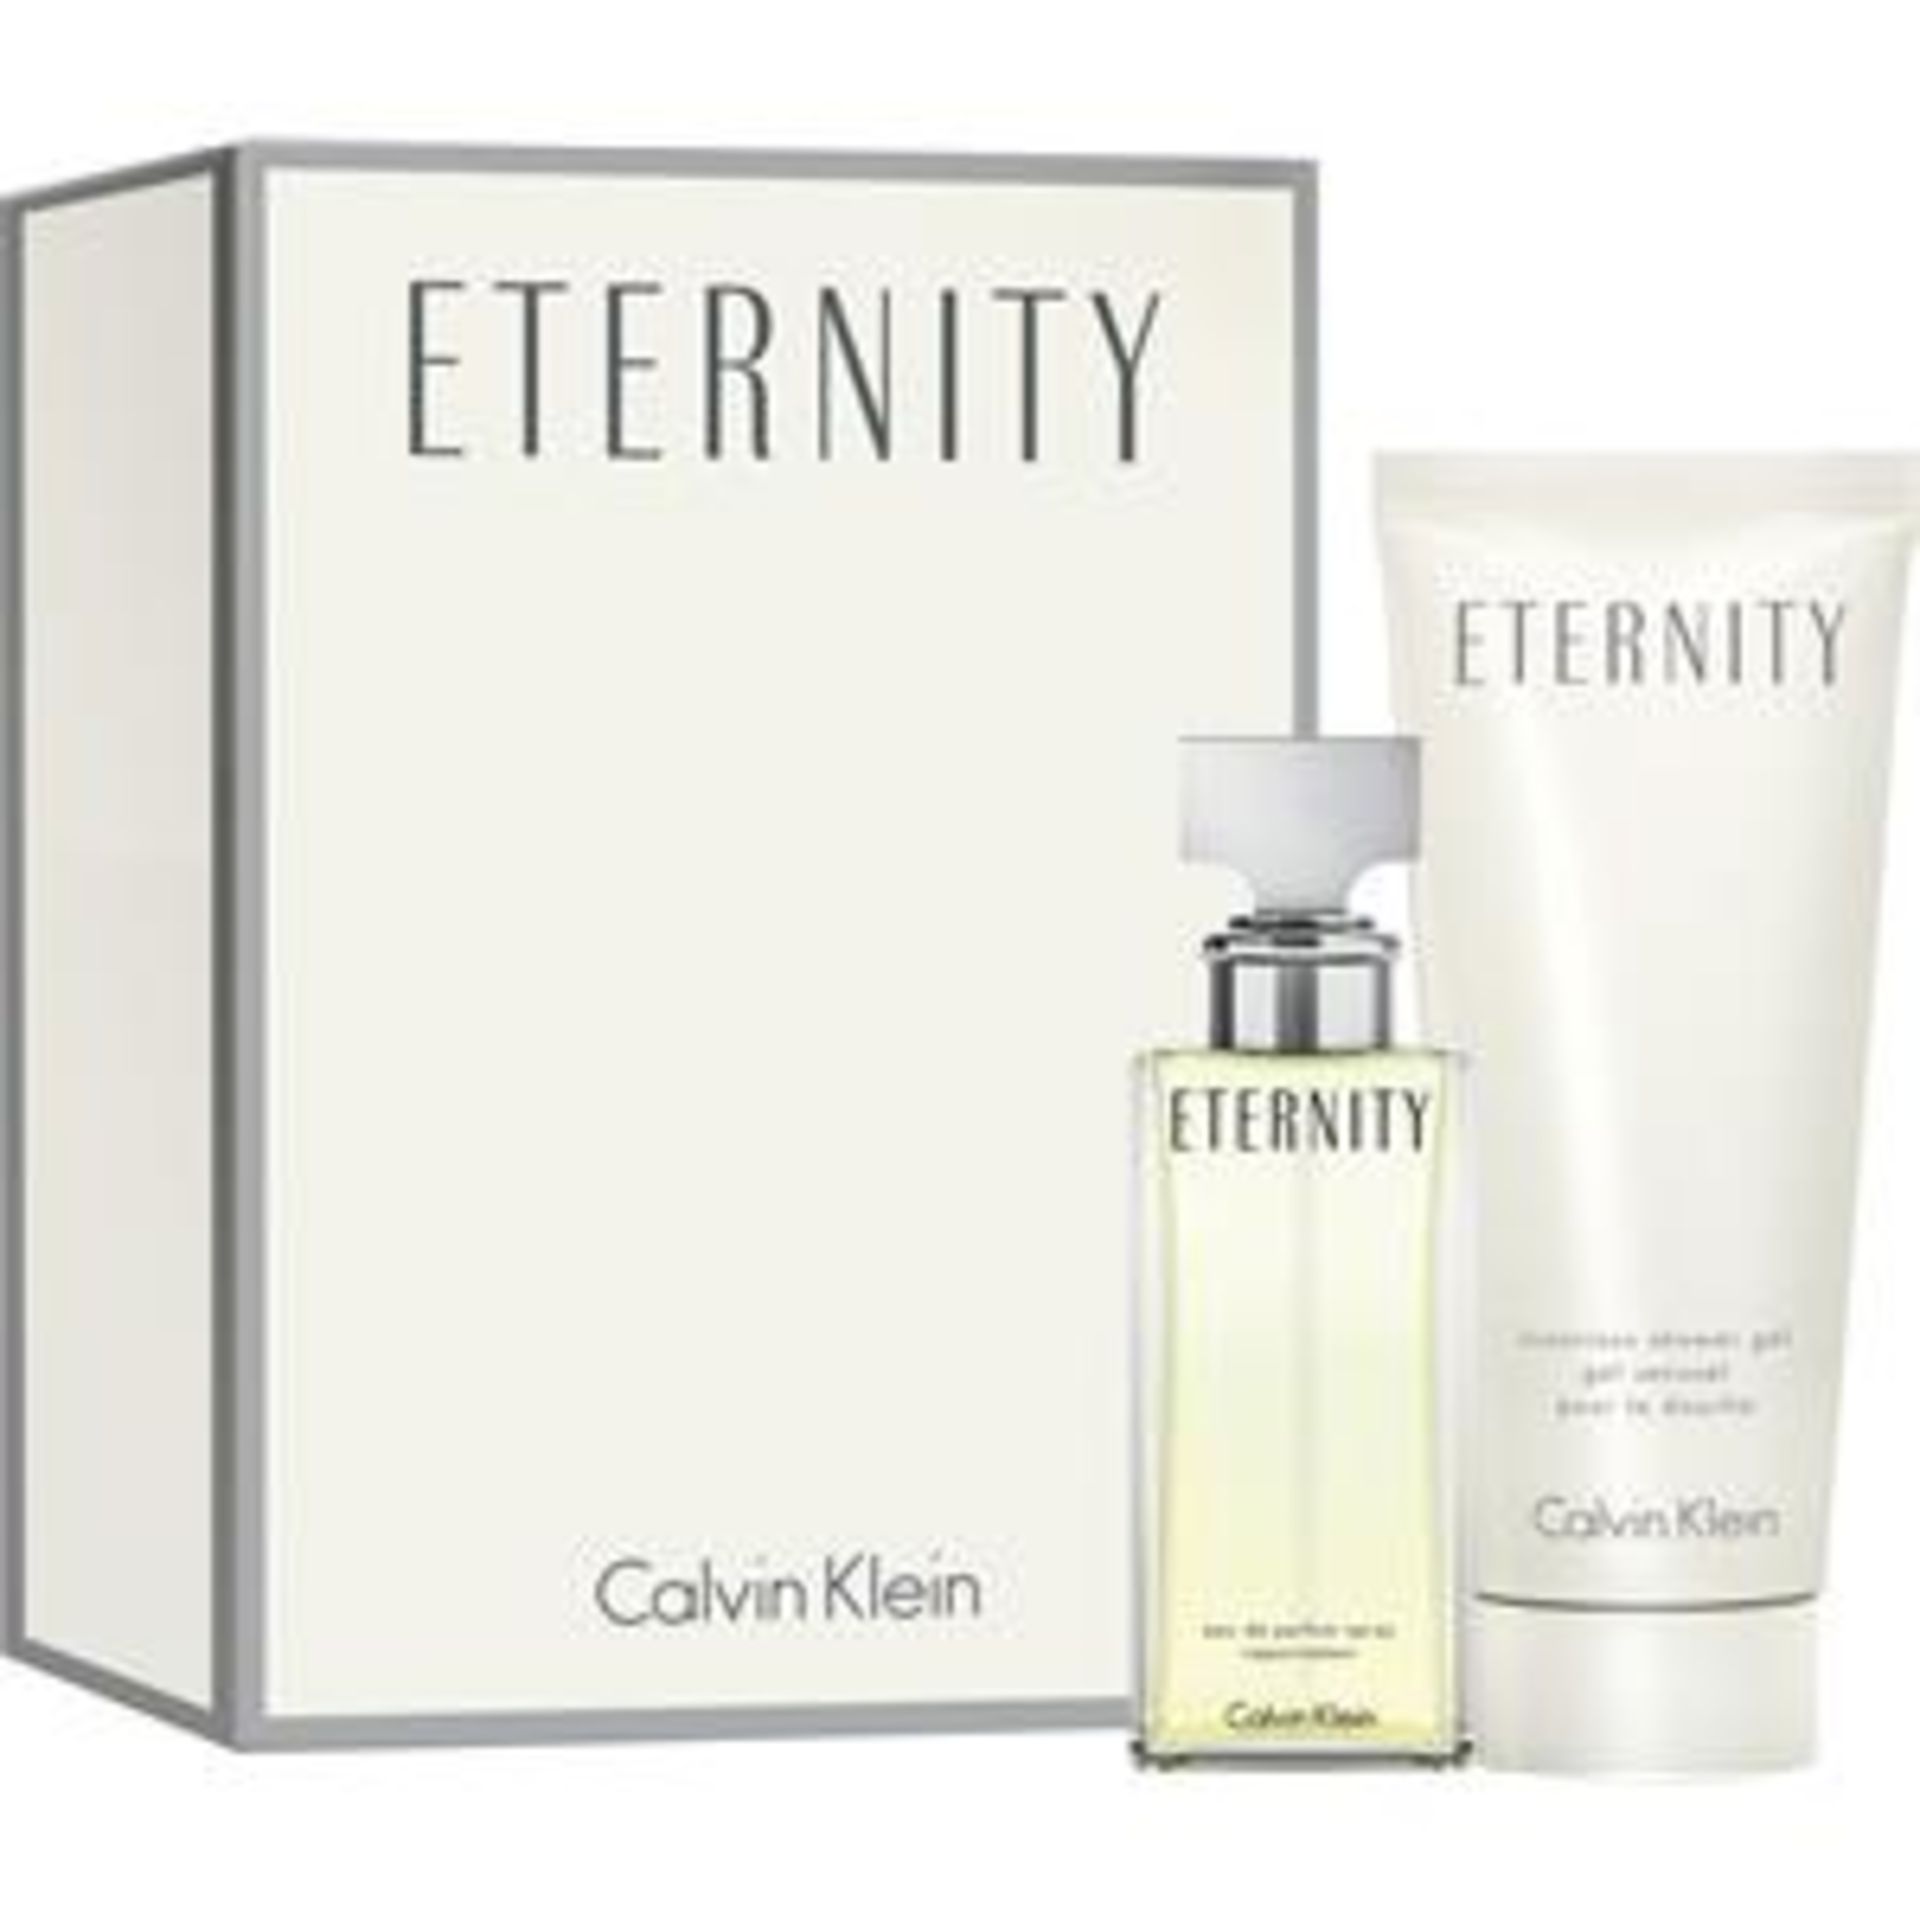 V Brand New Ladies Calvin Klein Eternity Gift Set - 30ml Eau De Toilette Spray & 100ml Shower Gel